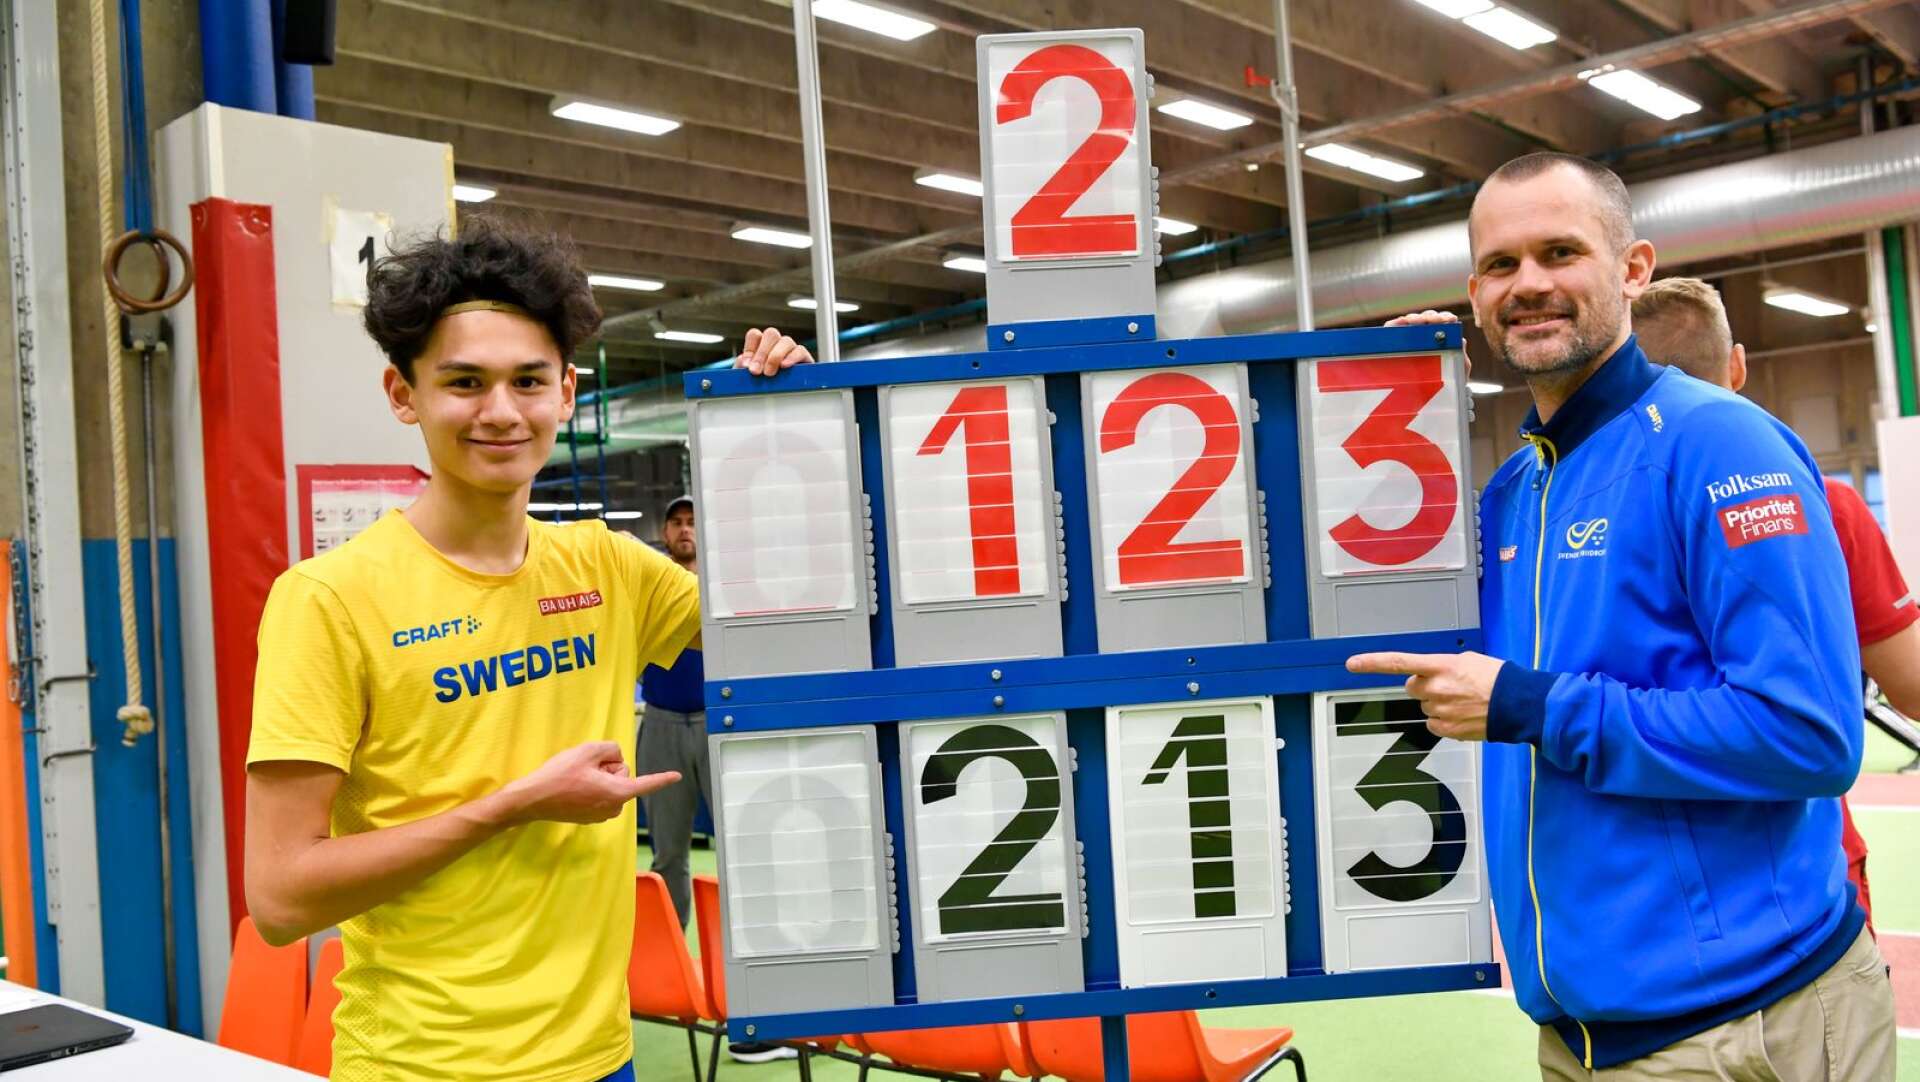  Melwin Lycke-Holm med pappa Stefan efter att klarat 2,13.